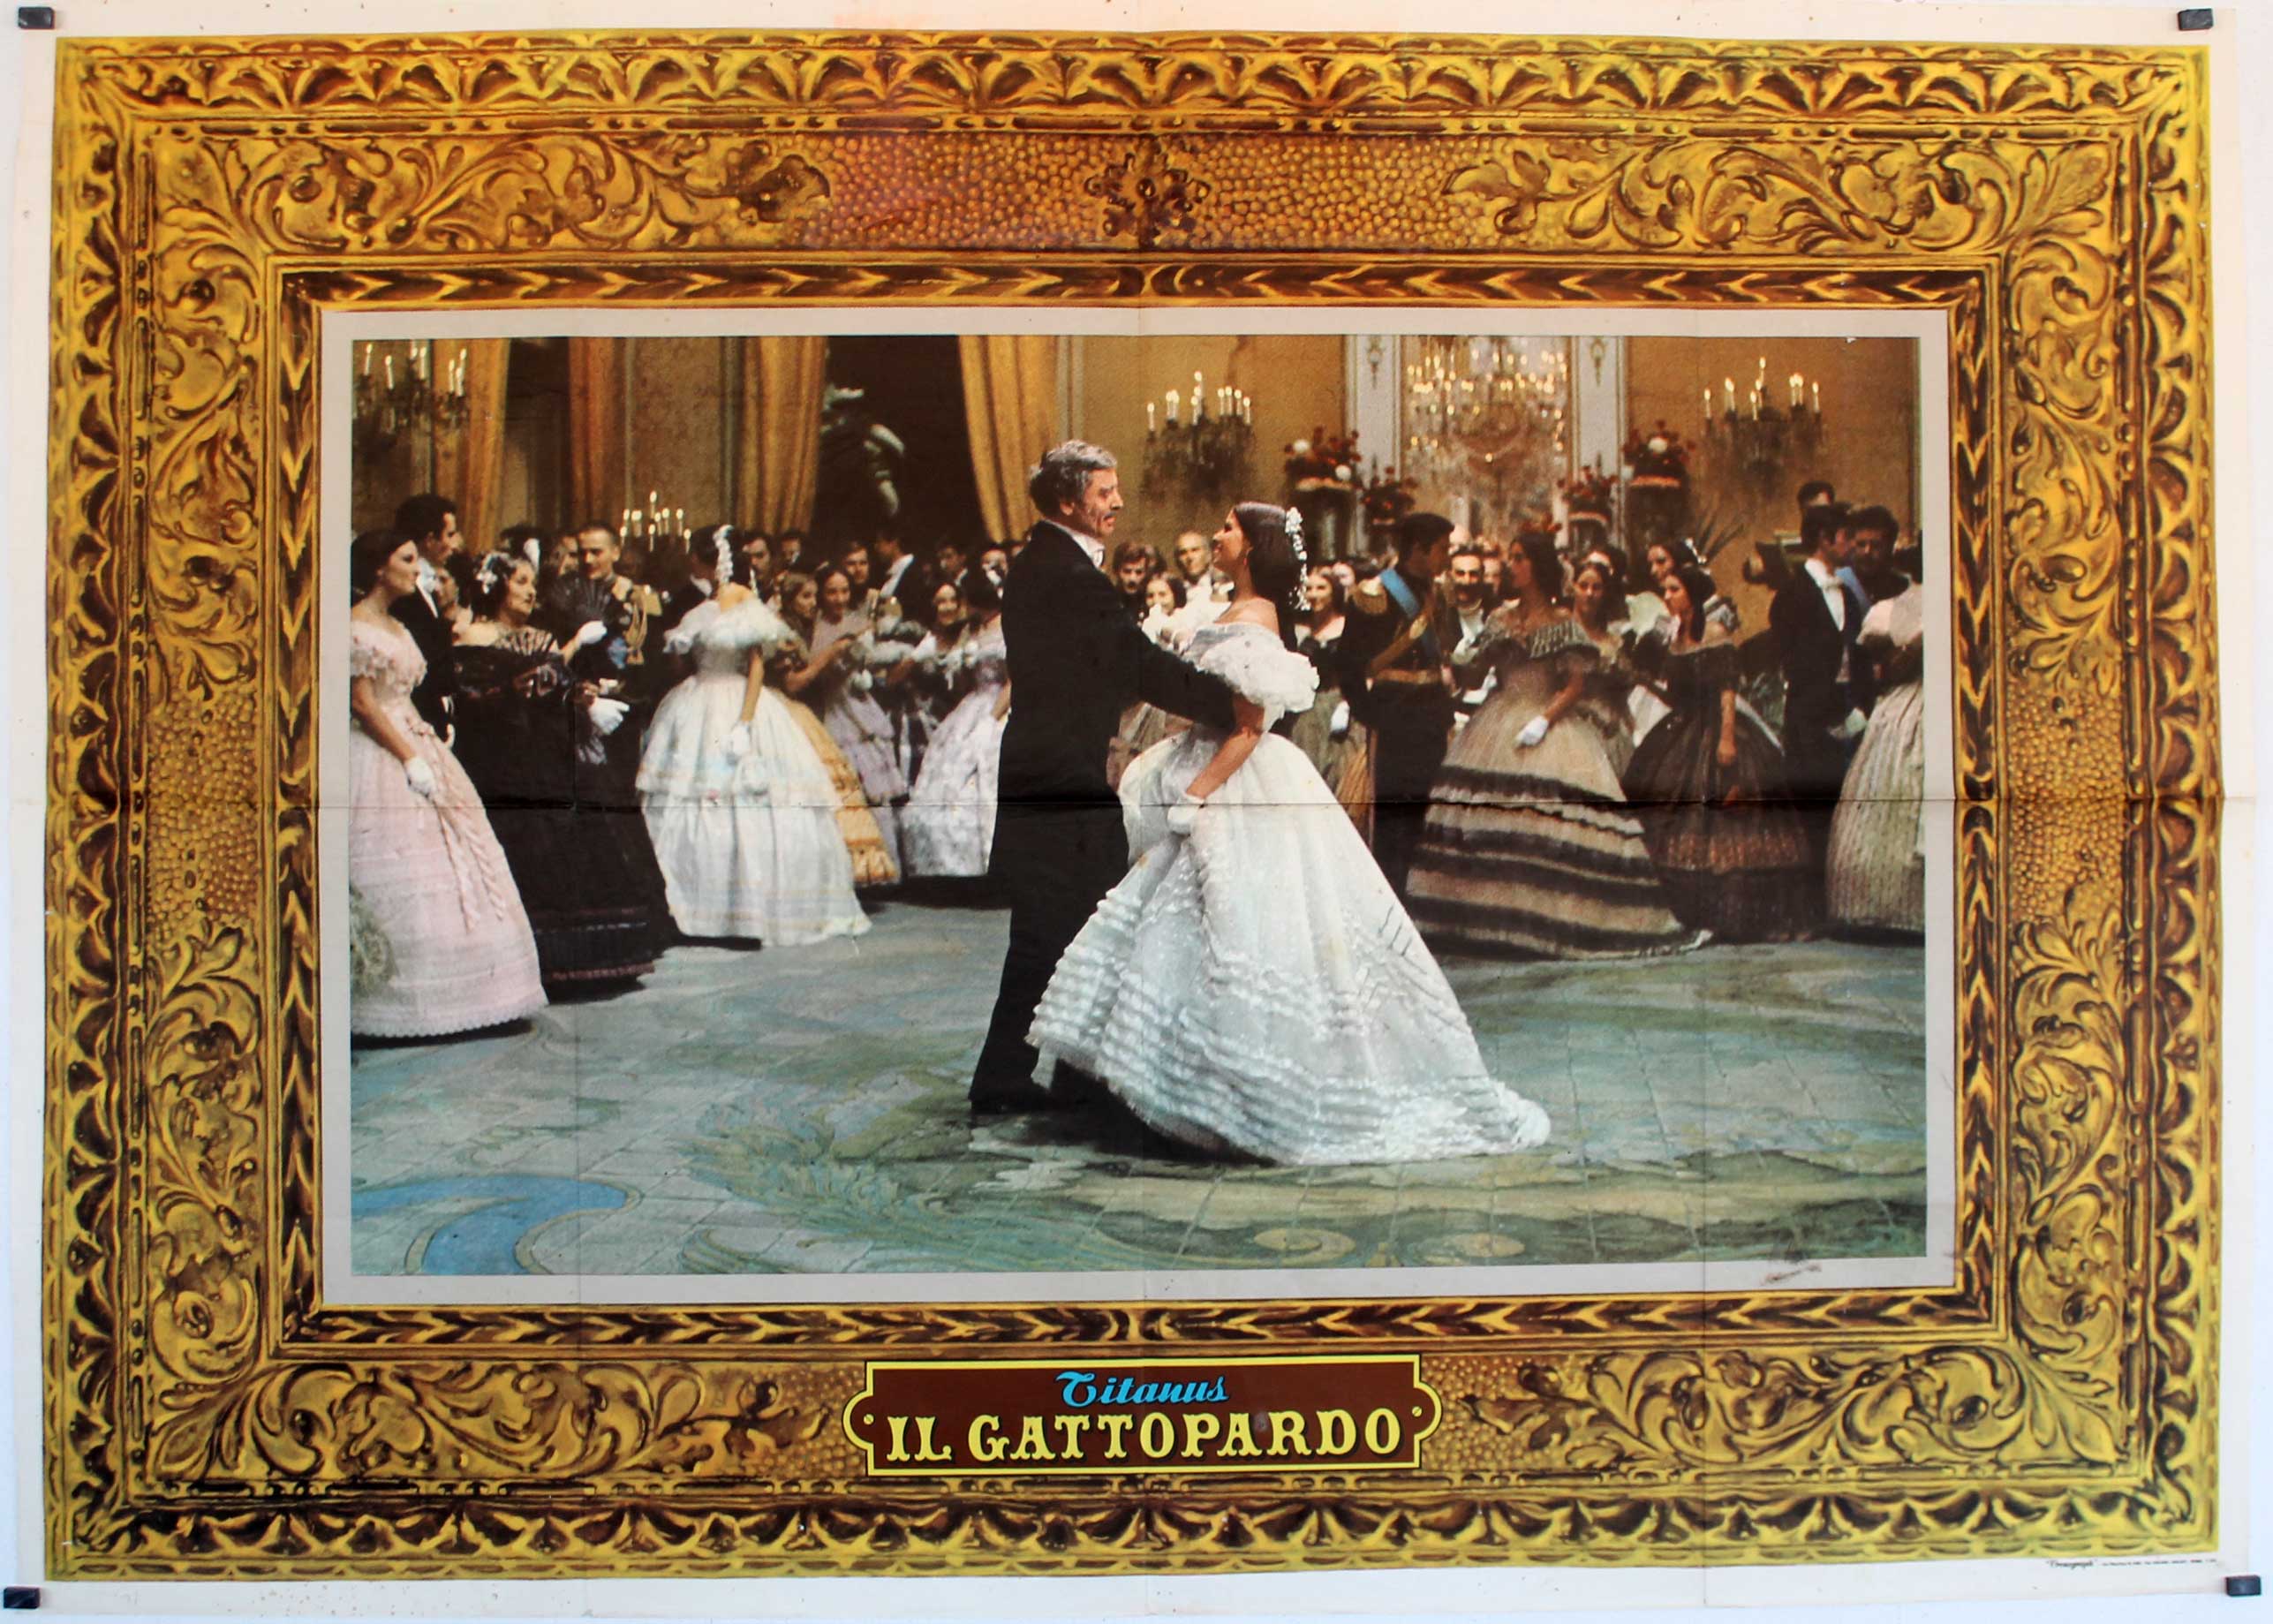 Lampart Visconti Movie Poster Il Gattopardo Movie Poster